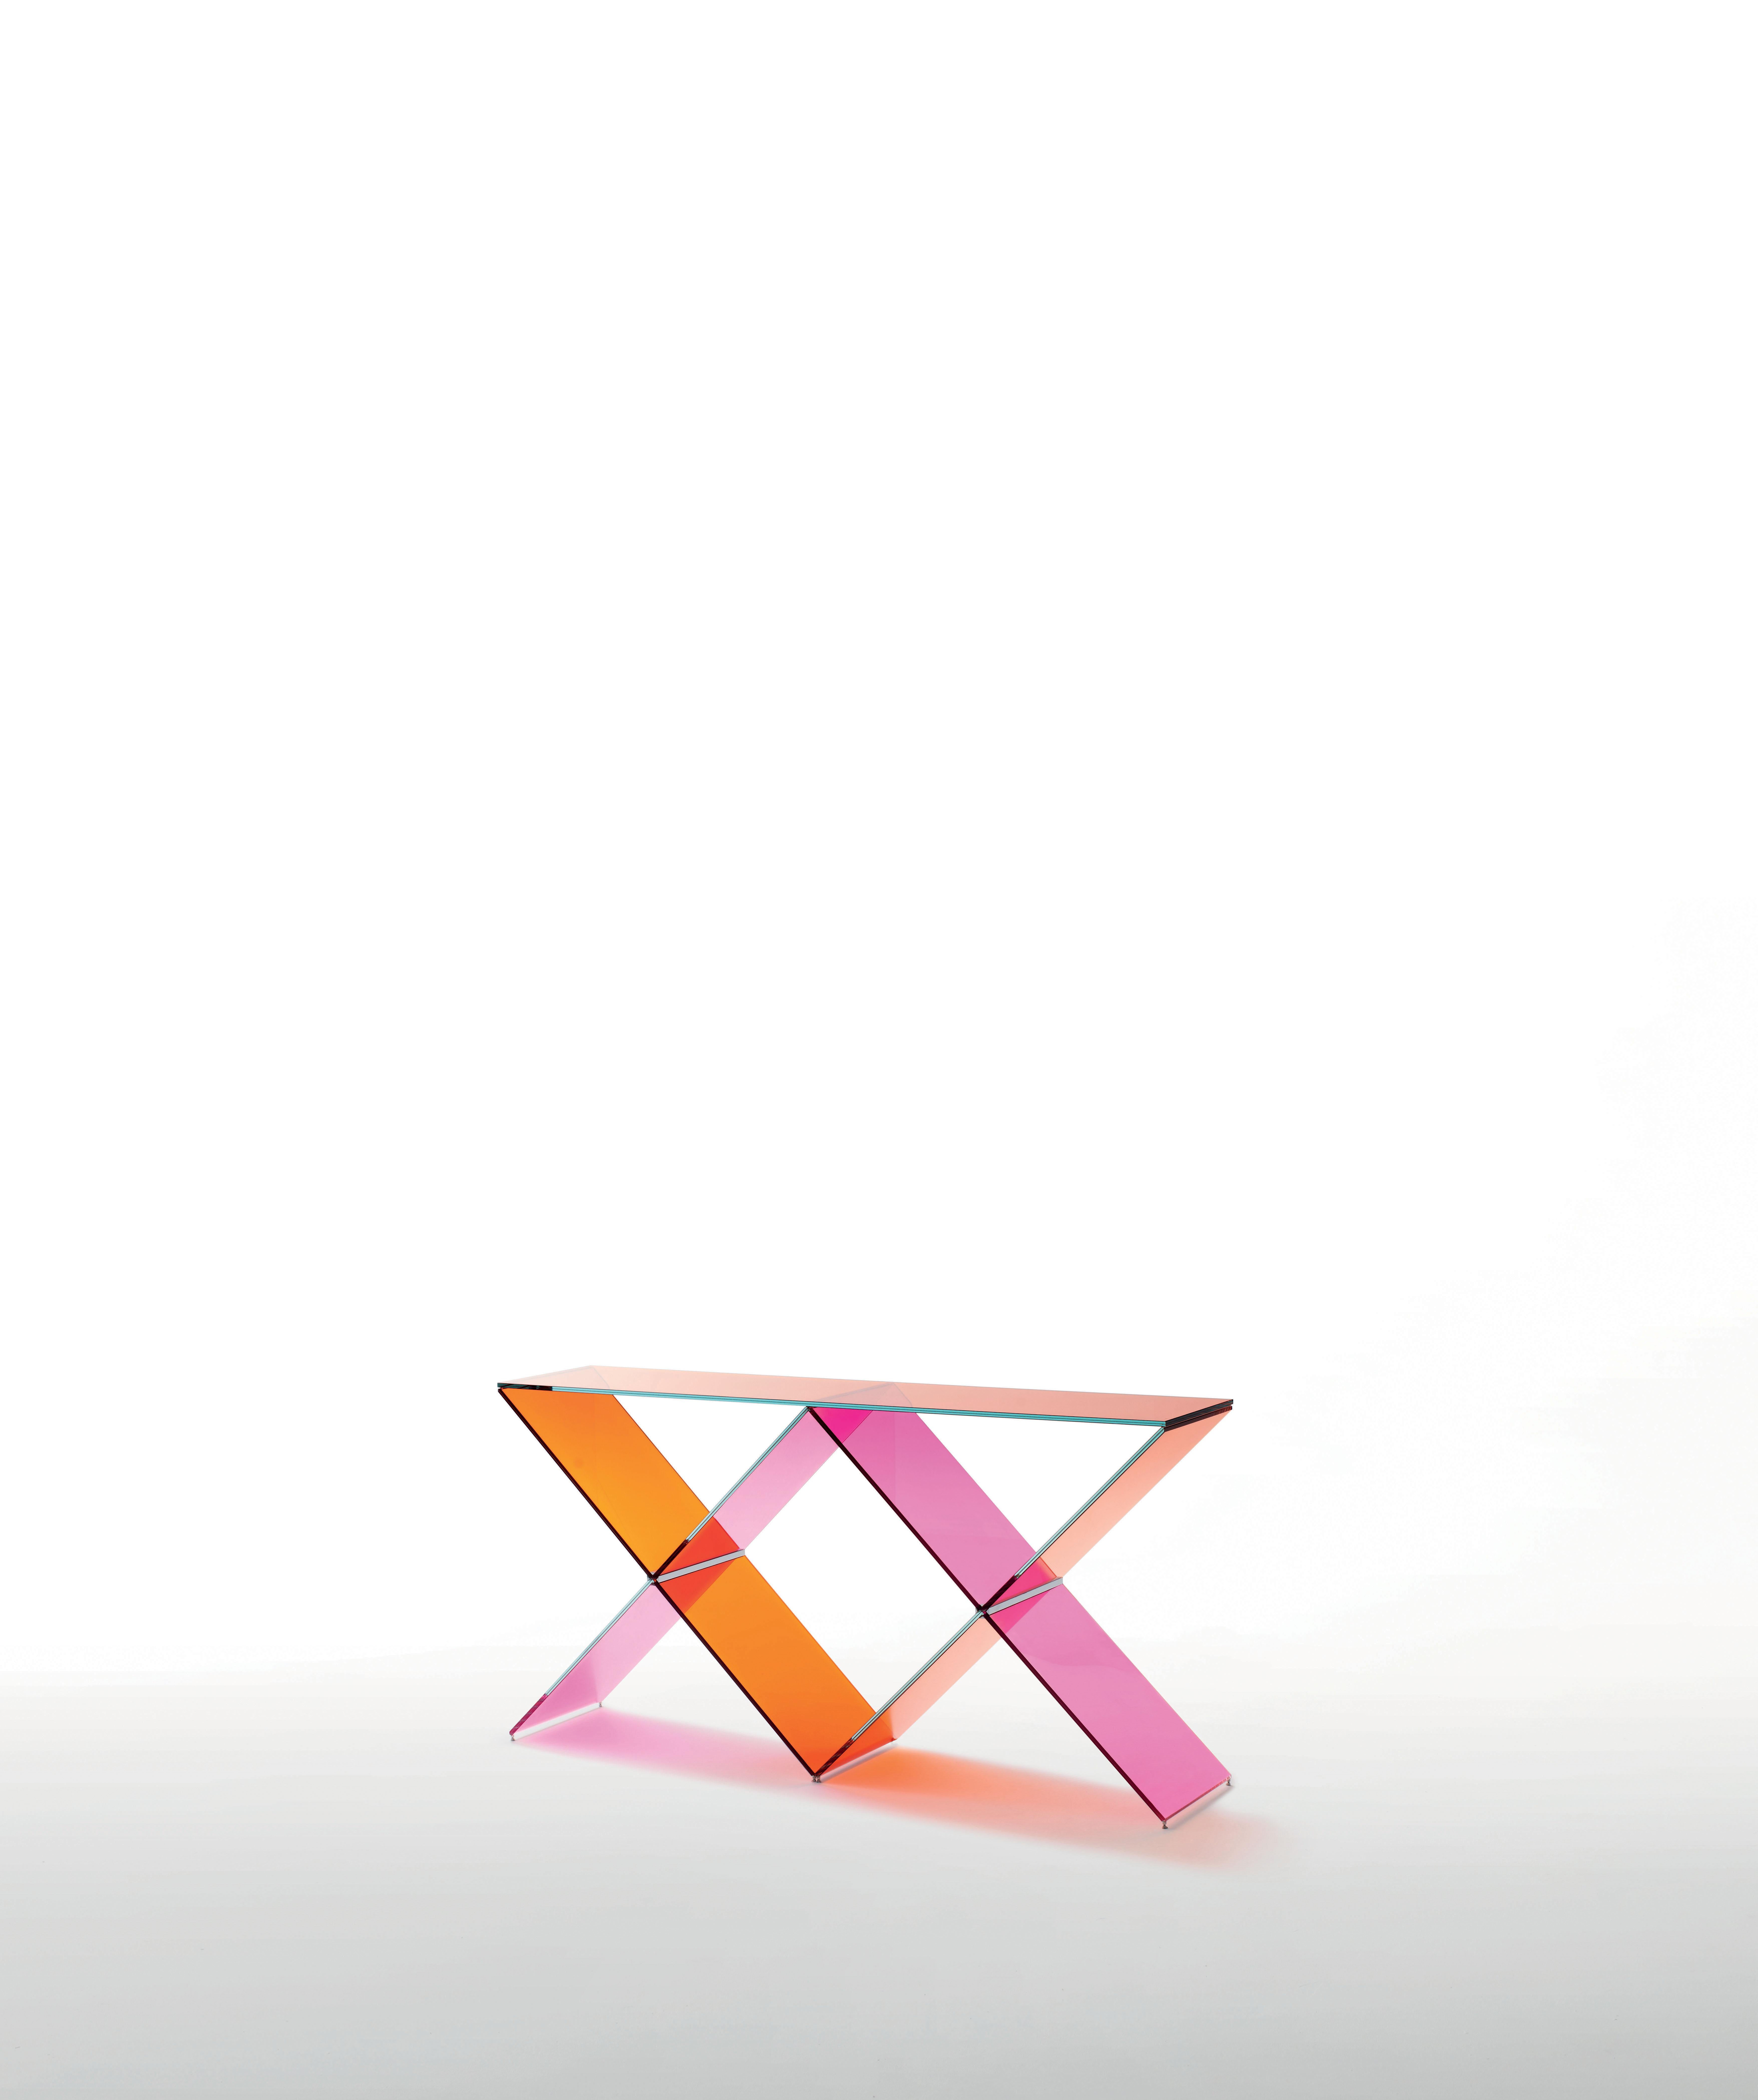 XX Konsolentisch ist hier in transparentem rosa und orangefarbenem Glas abgebildet. Konsole aus transparentem rosa und orangefarbenem Glas. Der Sockel besteht aus zwei X aus gehärtetem und laminiertem Glas mit einer Stärke von 8+8 mm, mit spezieller